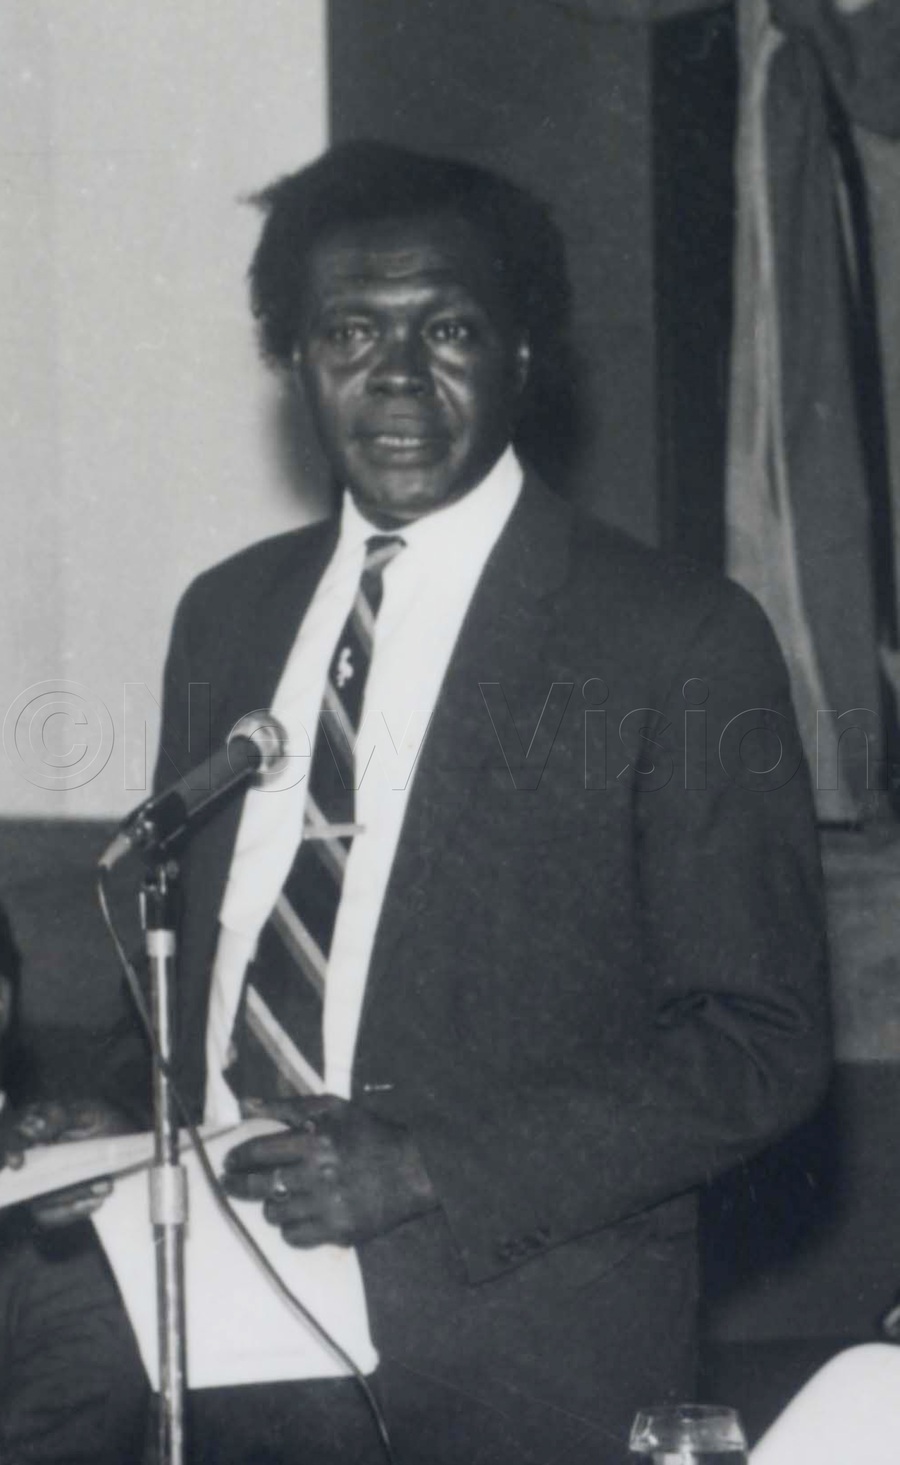 Milton Obote